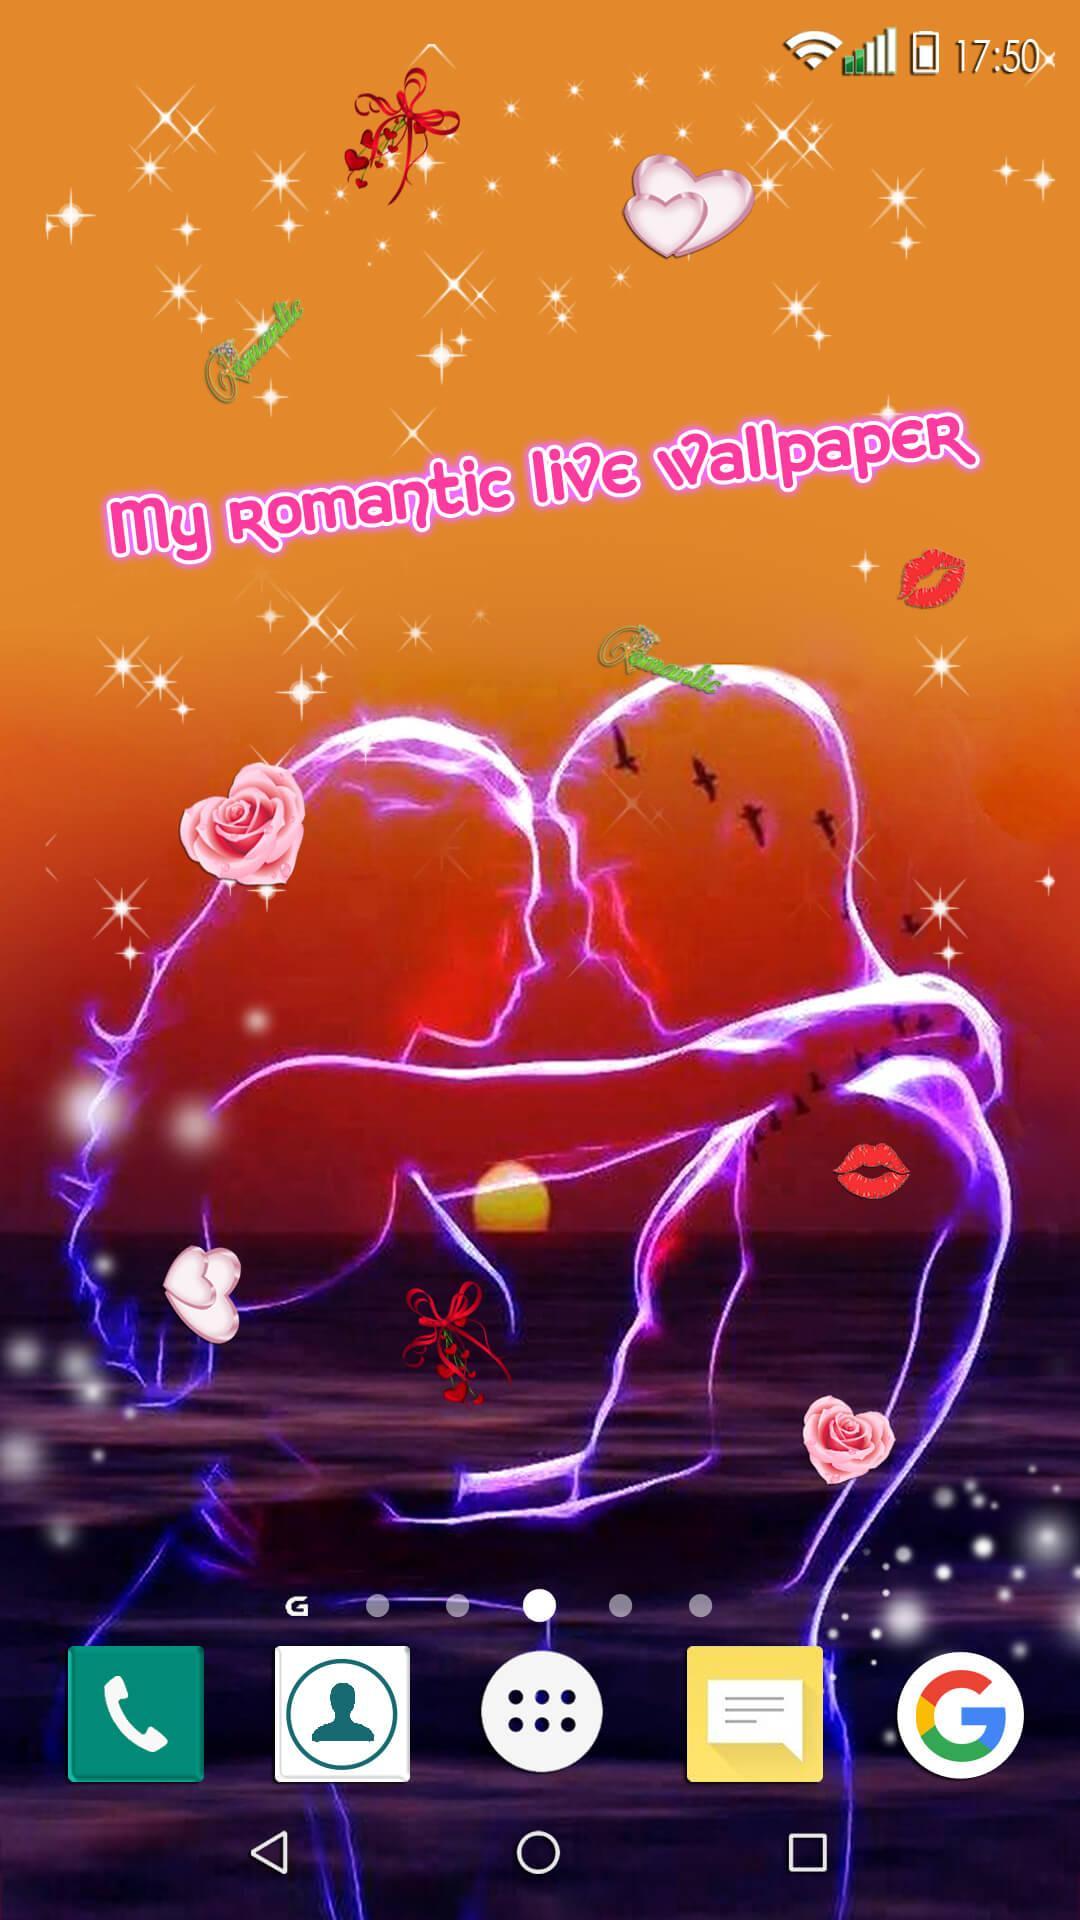 Wallpaper Cinta Romantis Bergerak Xd83dxdc9d Gambar Cinta For Android